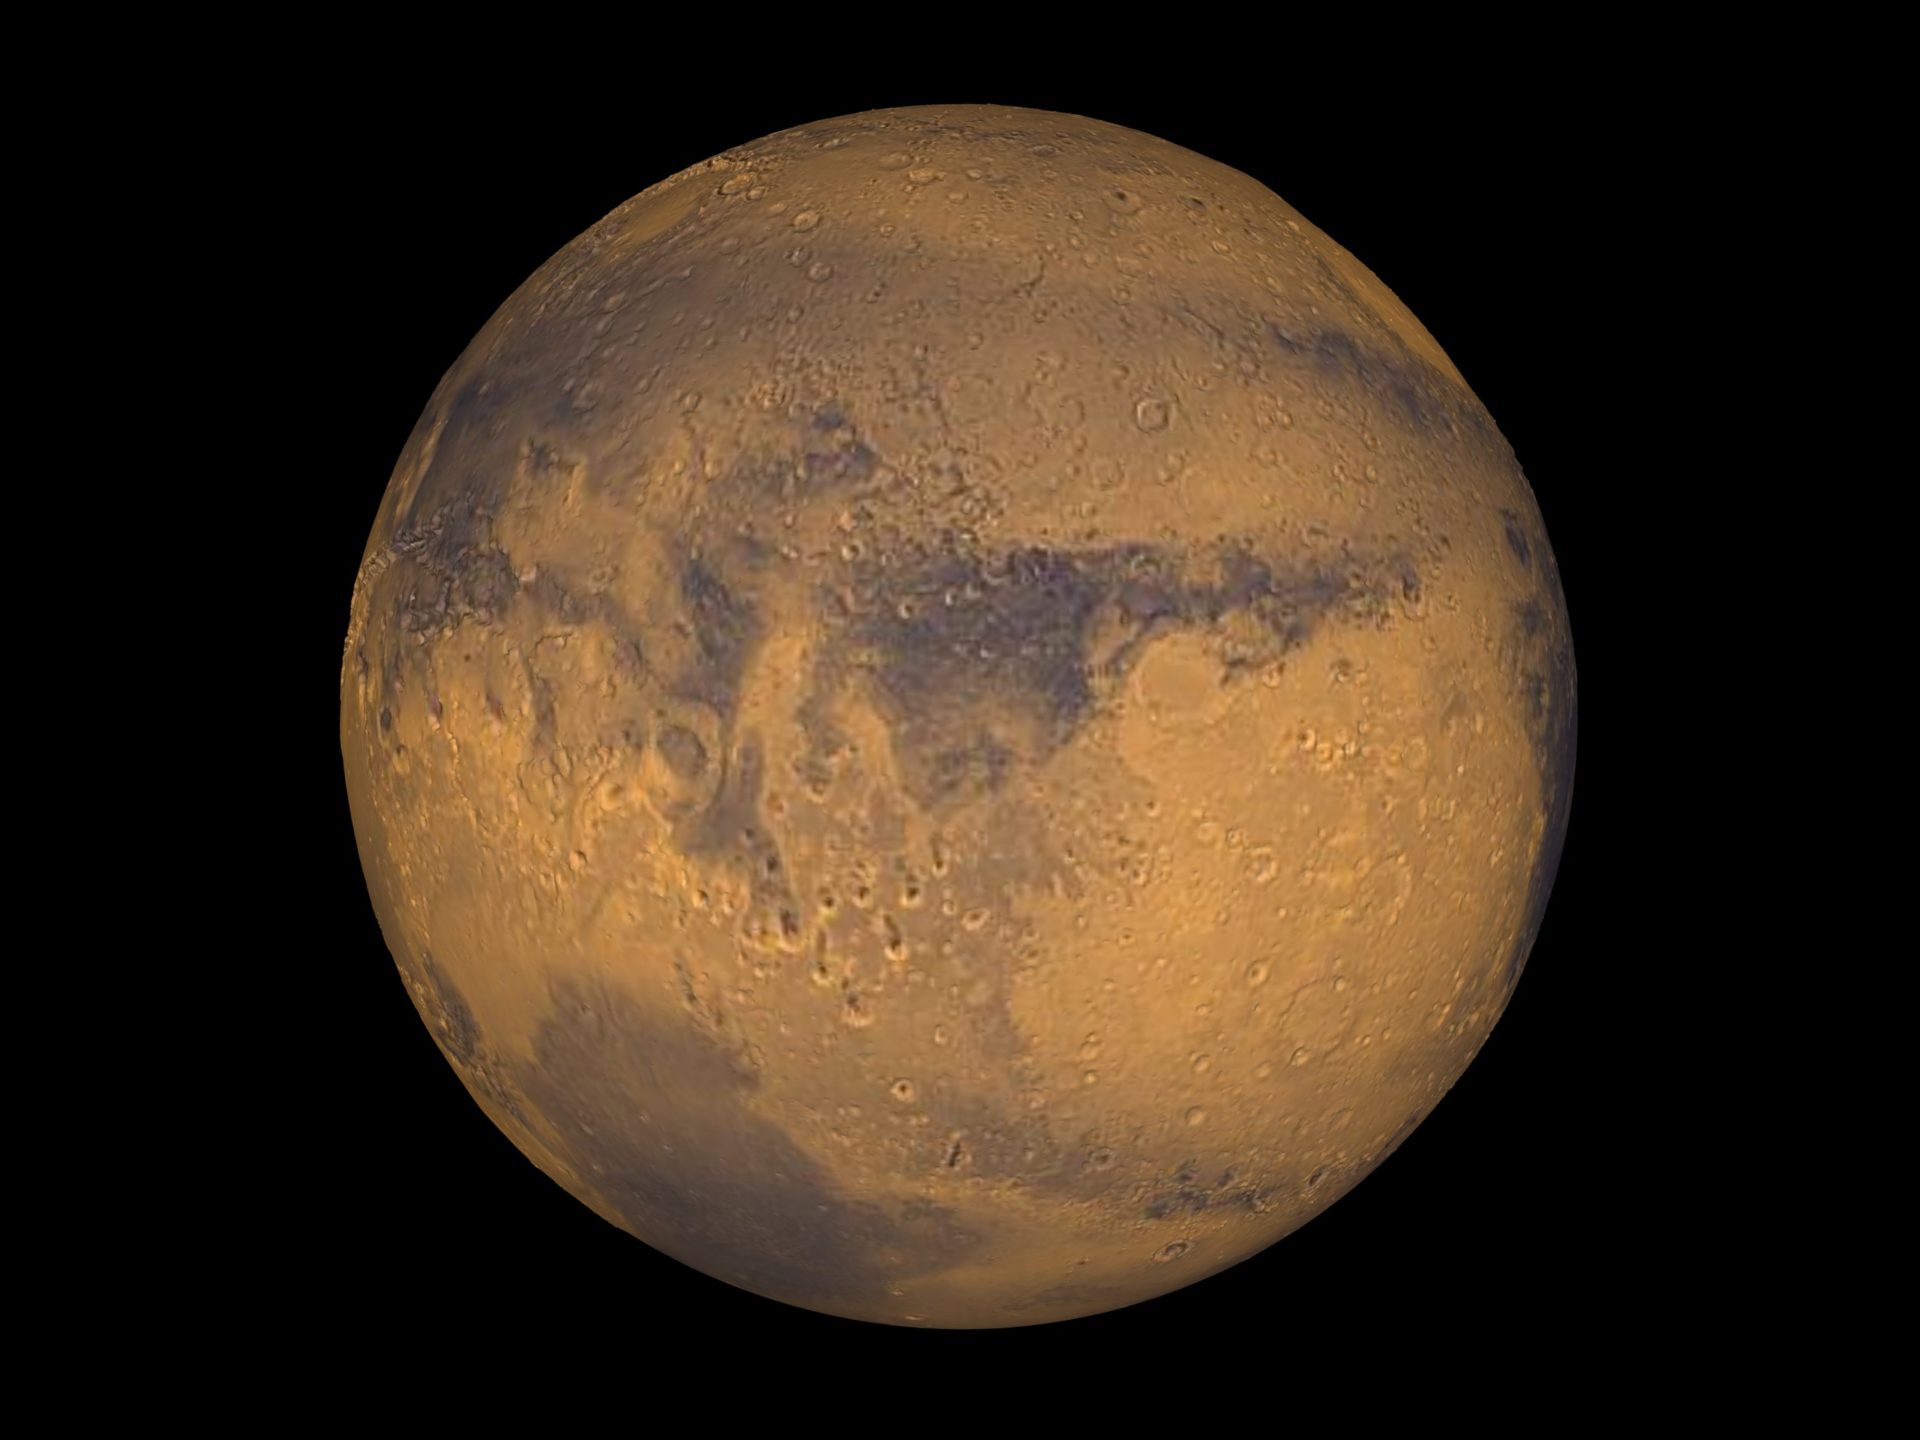 พบข้อมูลใหม่ น้ำบนดาวอังคารไหลรินต่อเนื่องยาวนานกว่าที่เคยคาดไว้นับพันล้านปี!